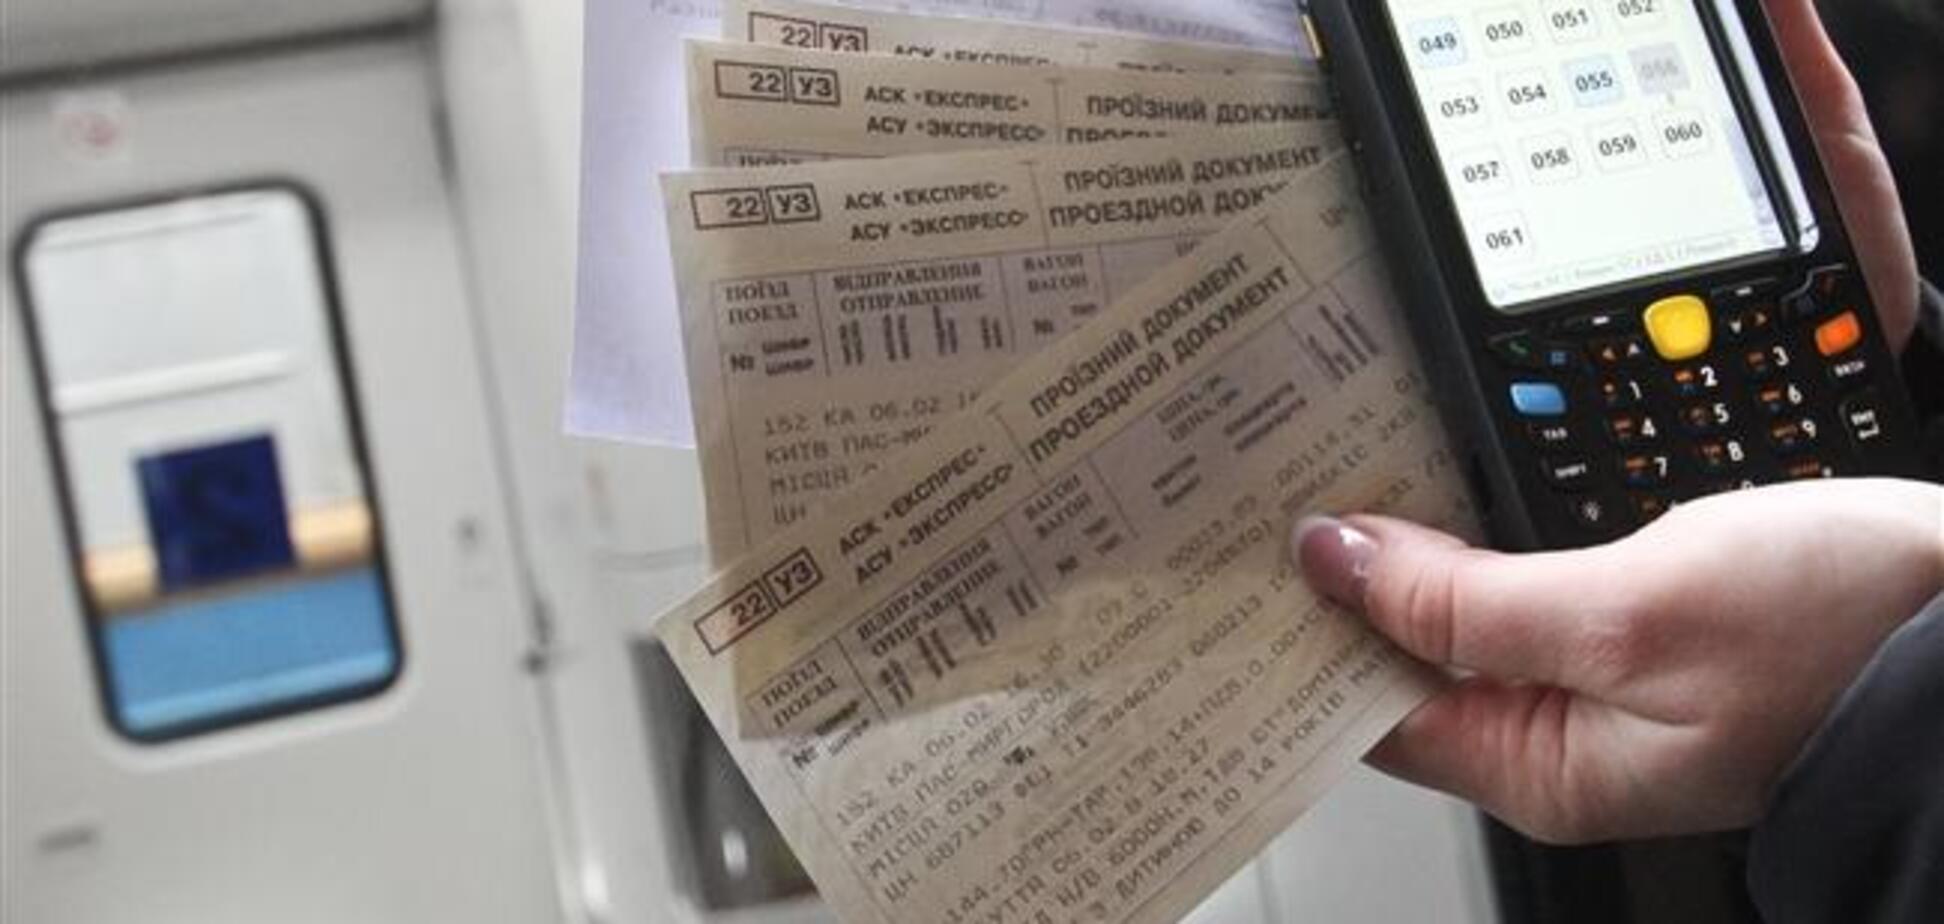 Отмена возврата билетов через интернет: 'Укрзалізниця' пояснила, что делать